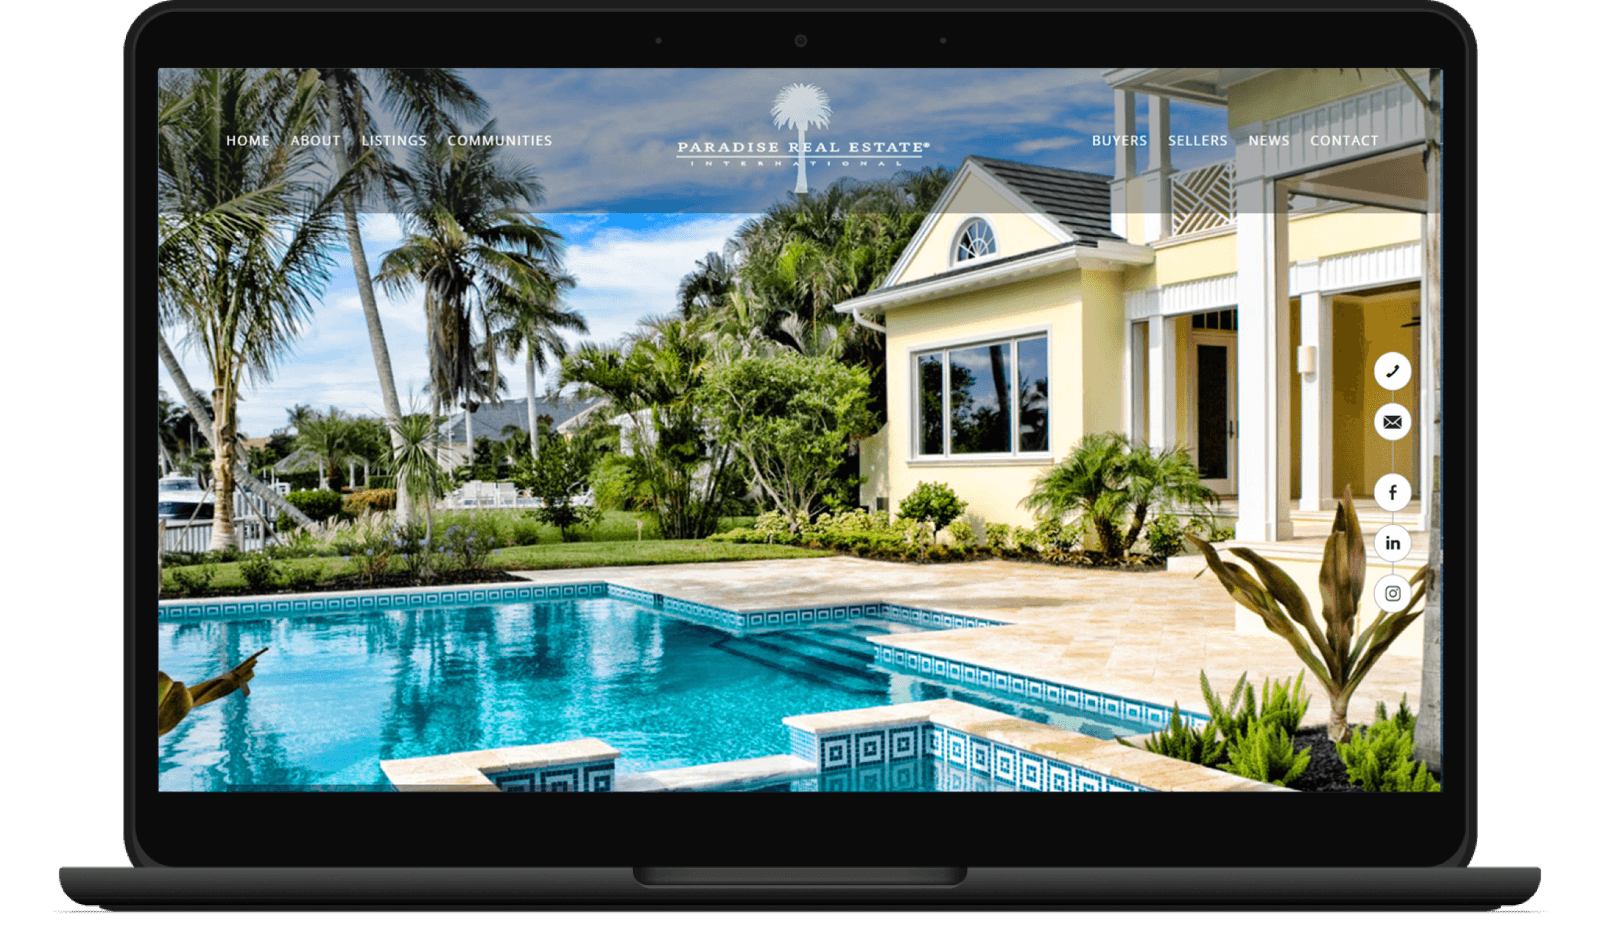 Paradise Real Estate International screenshot on laptop